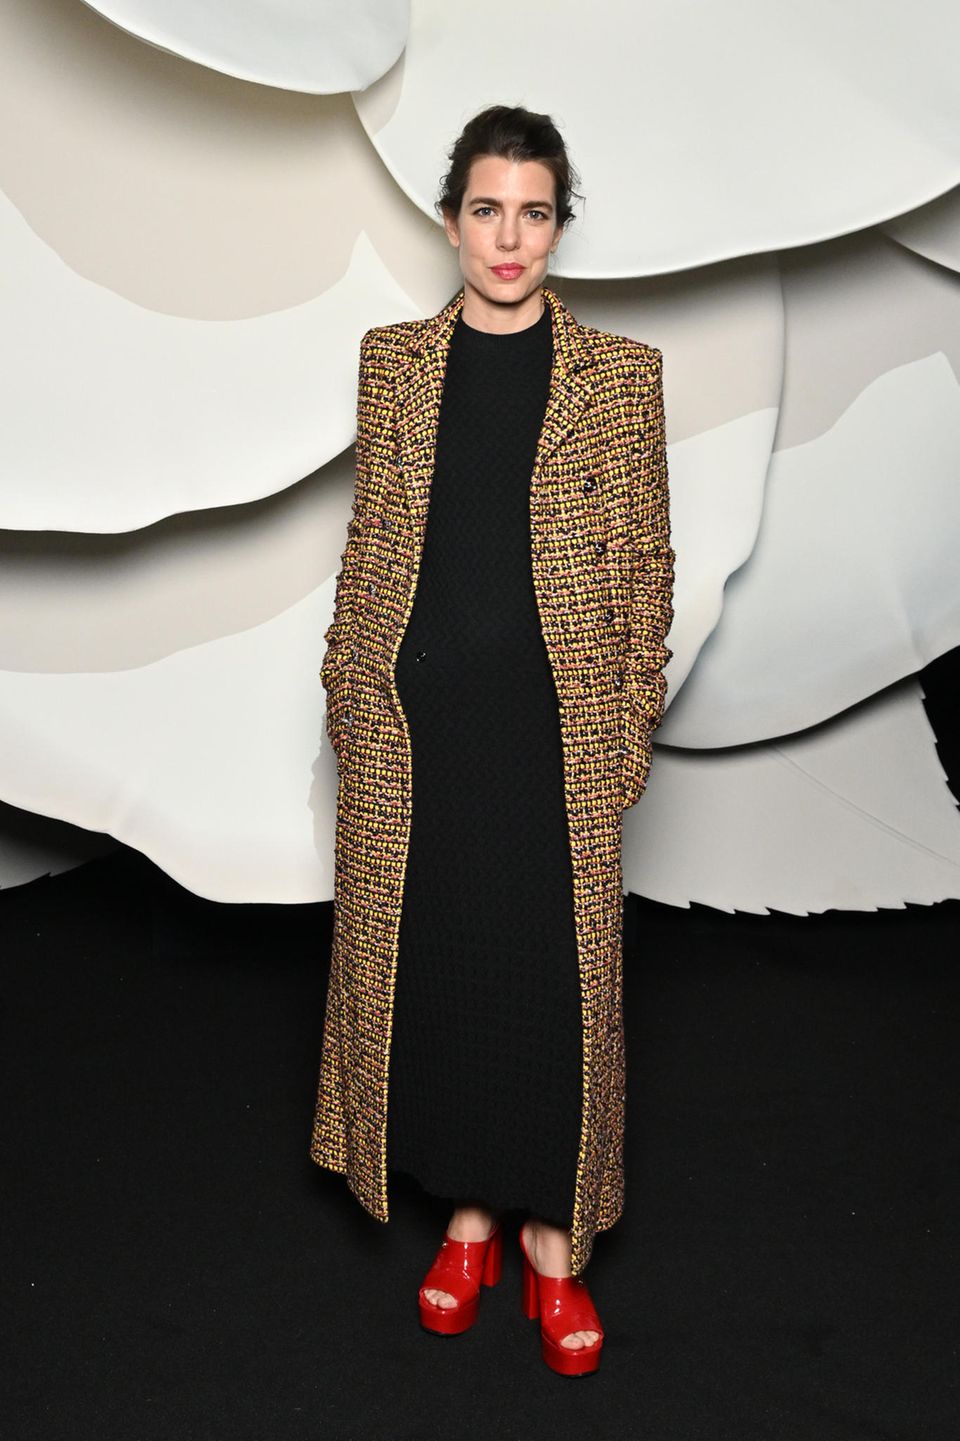 In einem Chanel-Outfit besucht Charlotte Casiraghi die Chanel-Show in Paris. Der elegante Look wird von den roten Lack-Plateau-Heels unterbrochen: ein ungewohntes, aber trendiges Fashion-Statement der Monegassin.